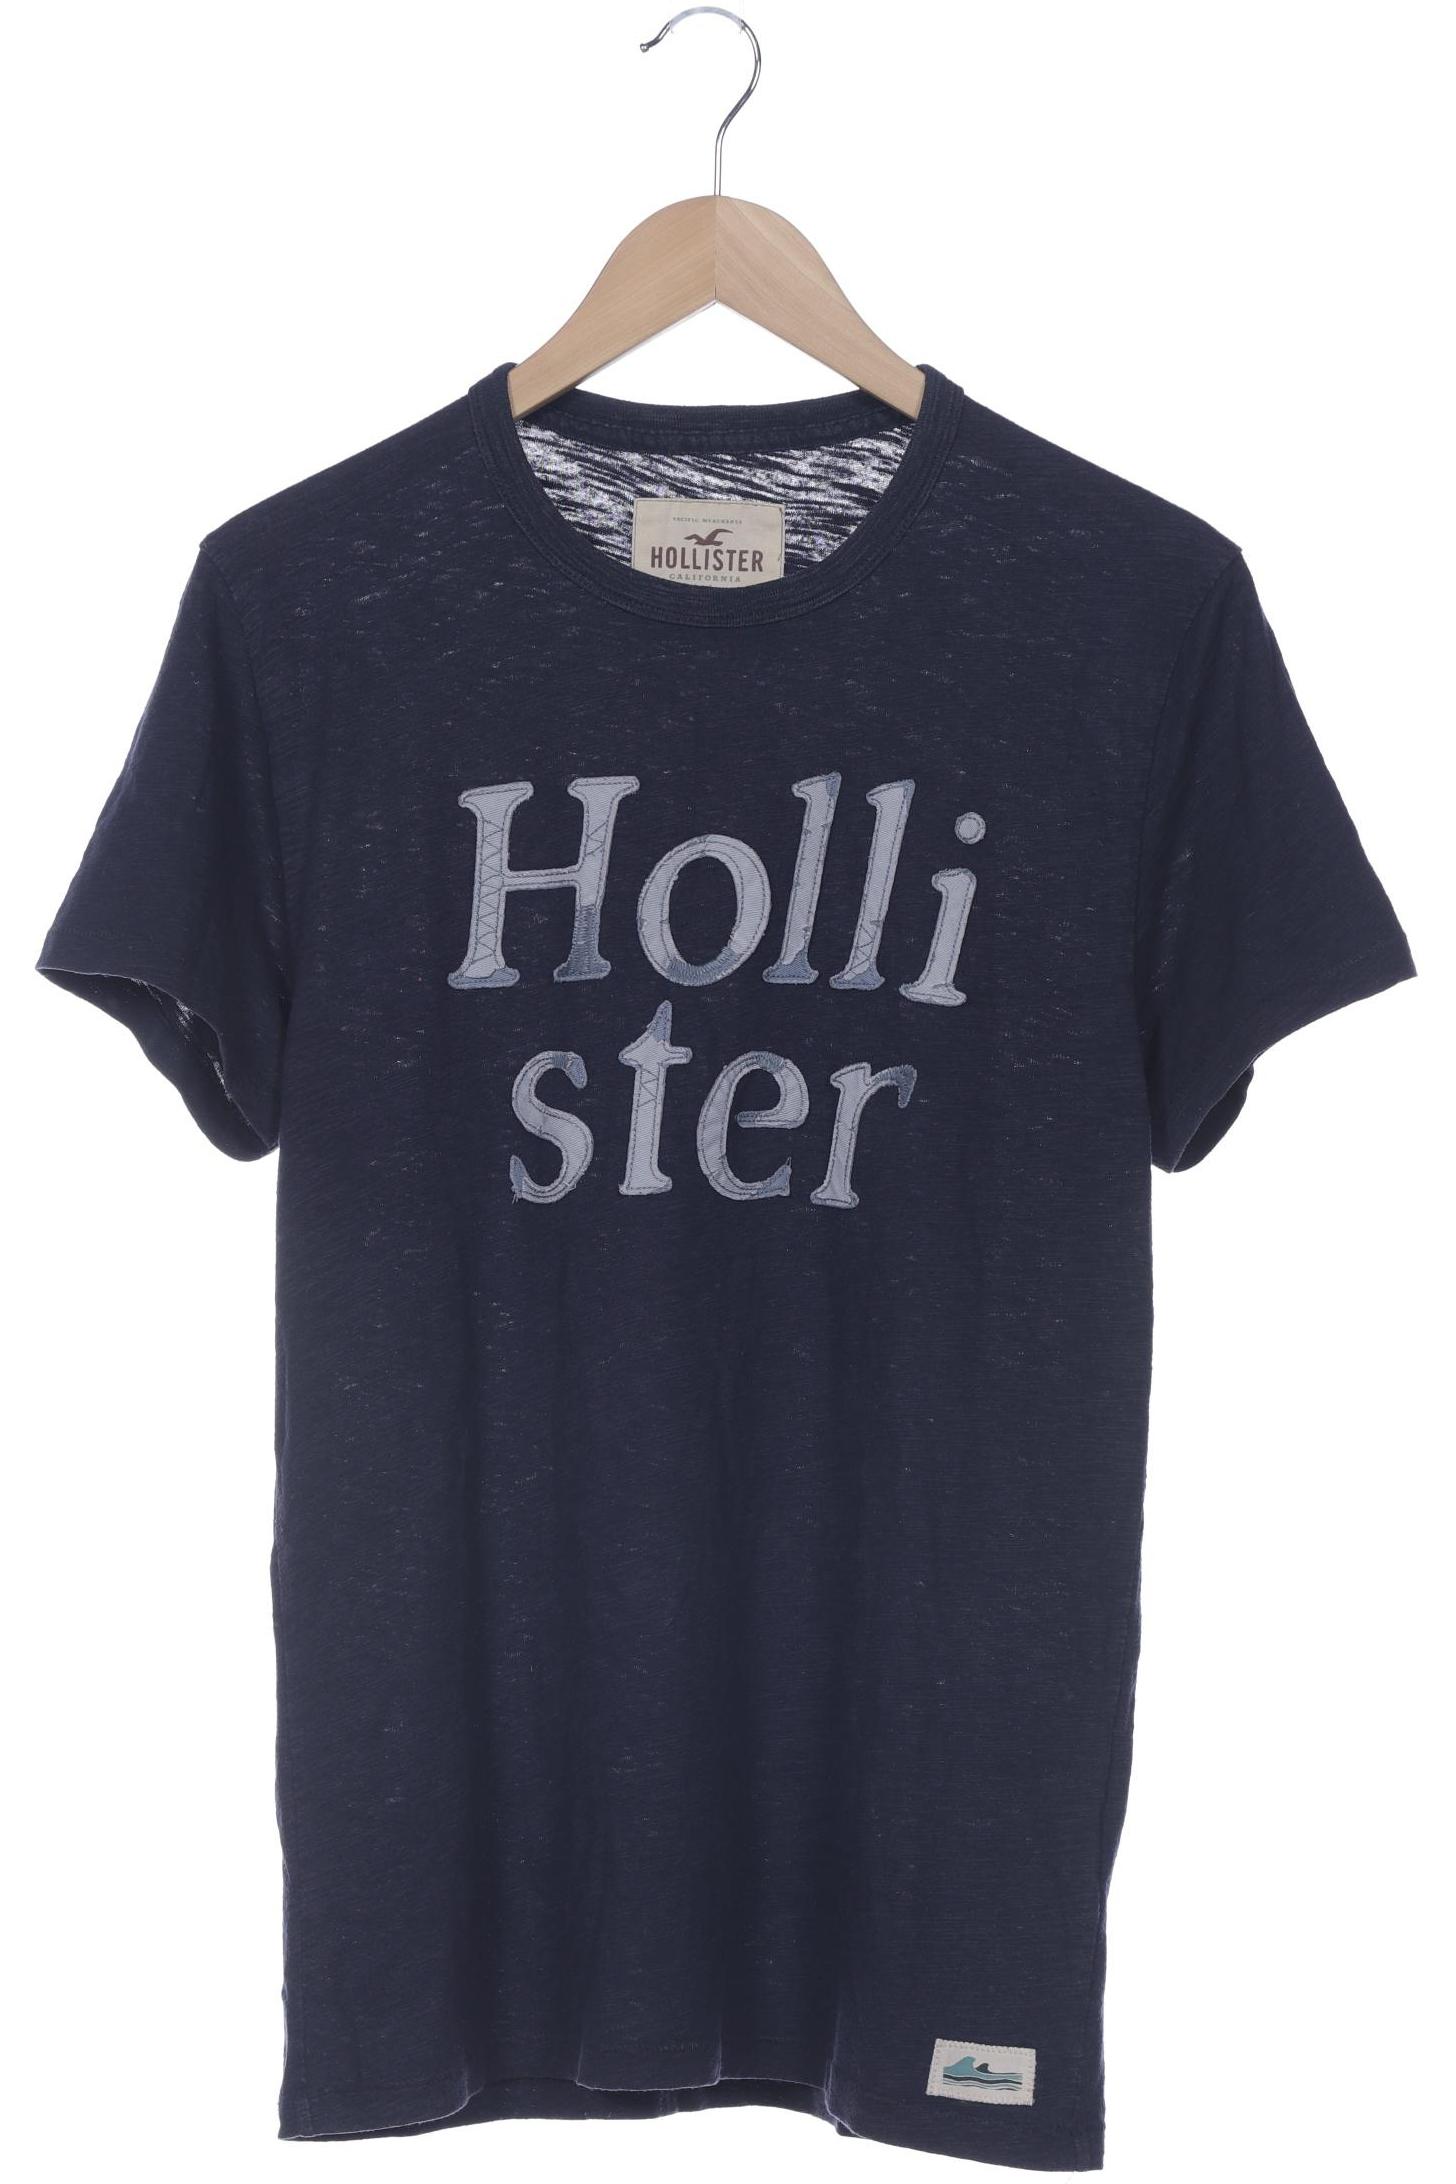 Hollister Herren T-Shirt, marineblau von Hollister